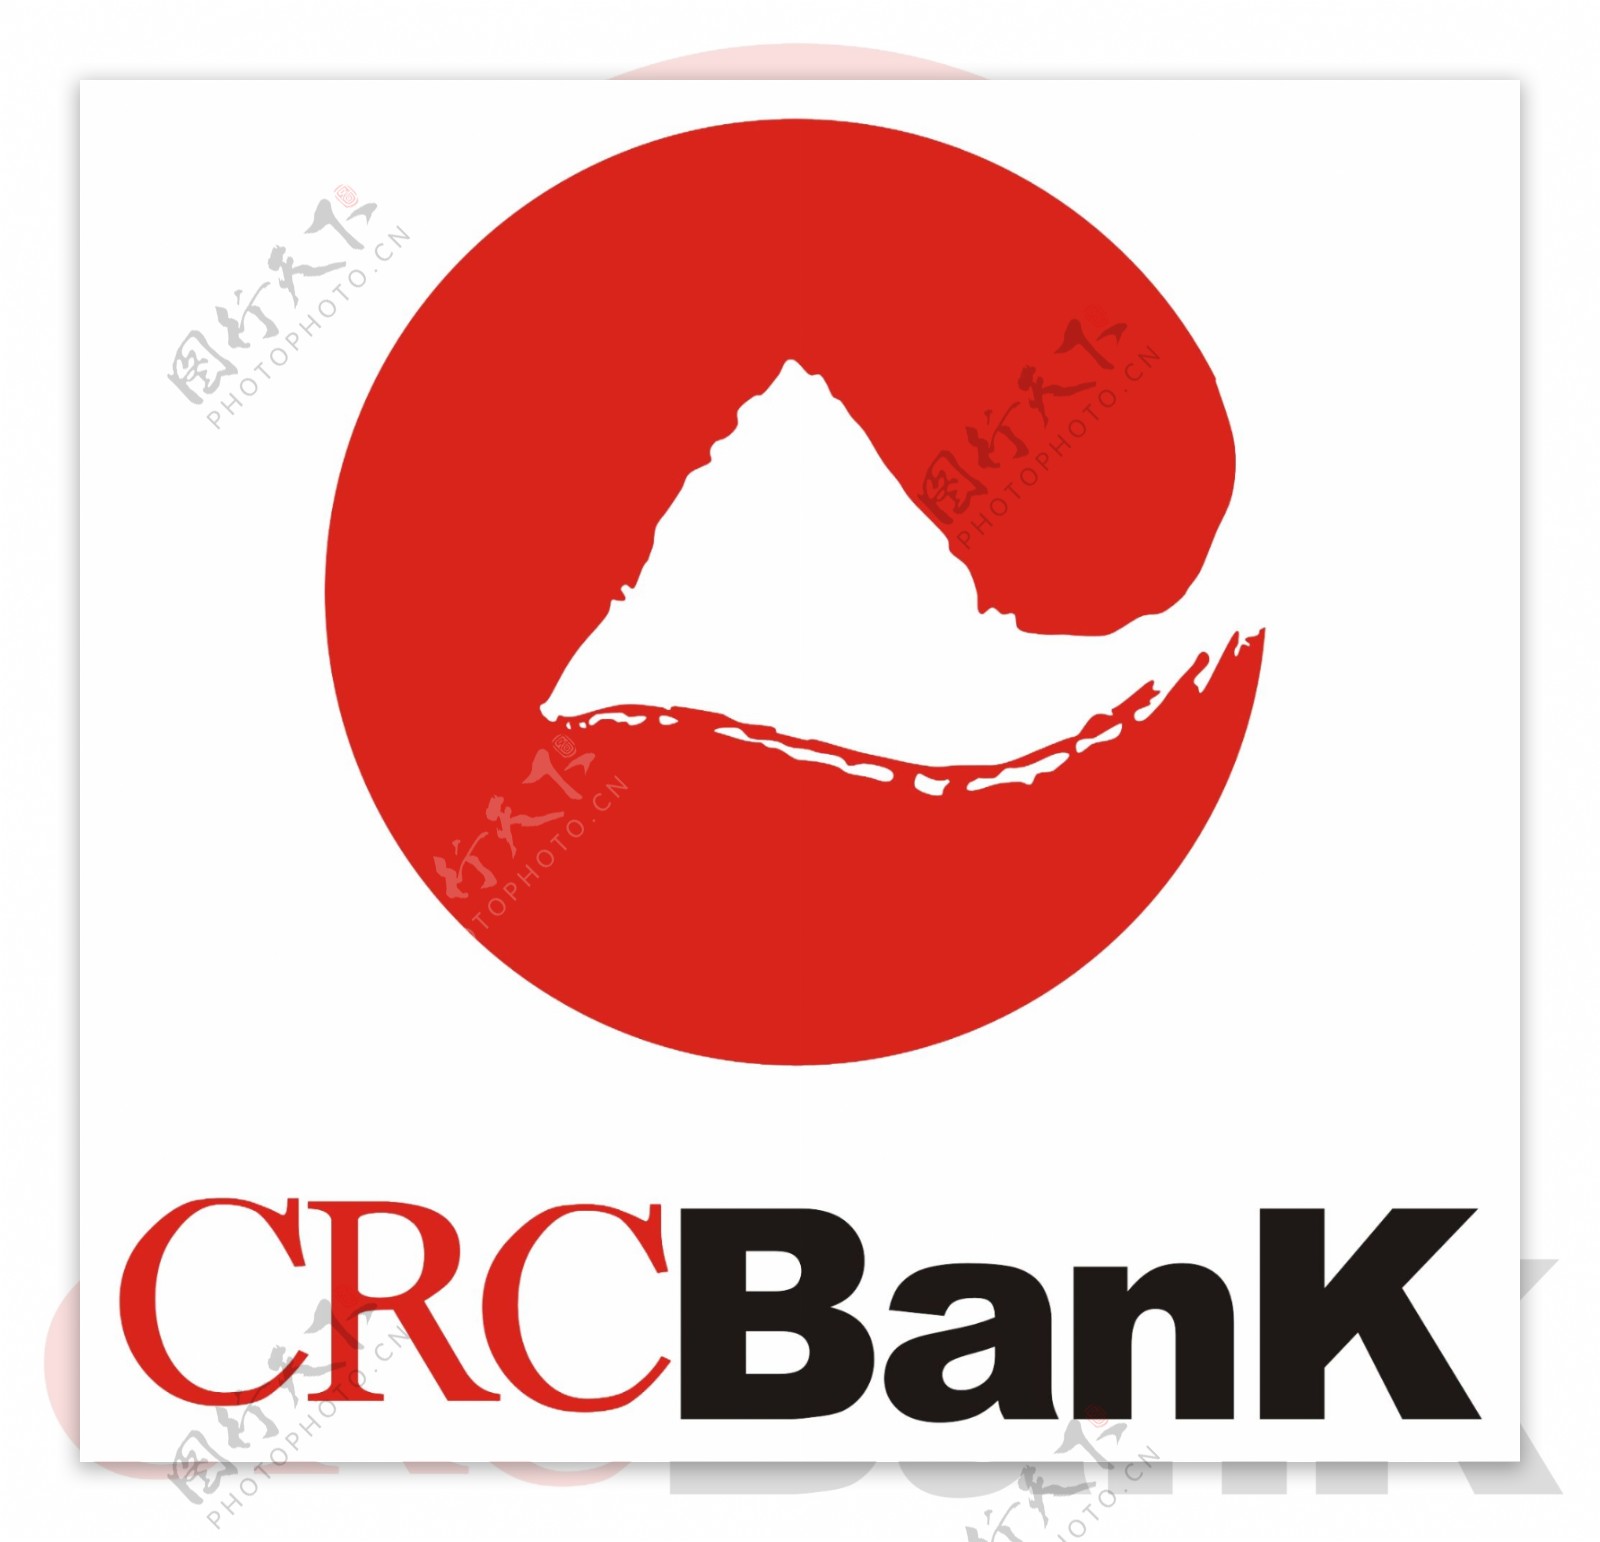 重庆农村商业银行crc图片